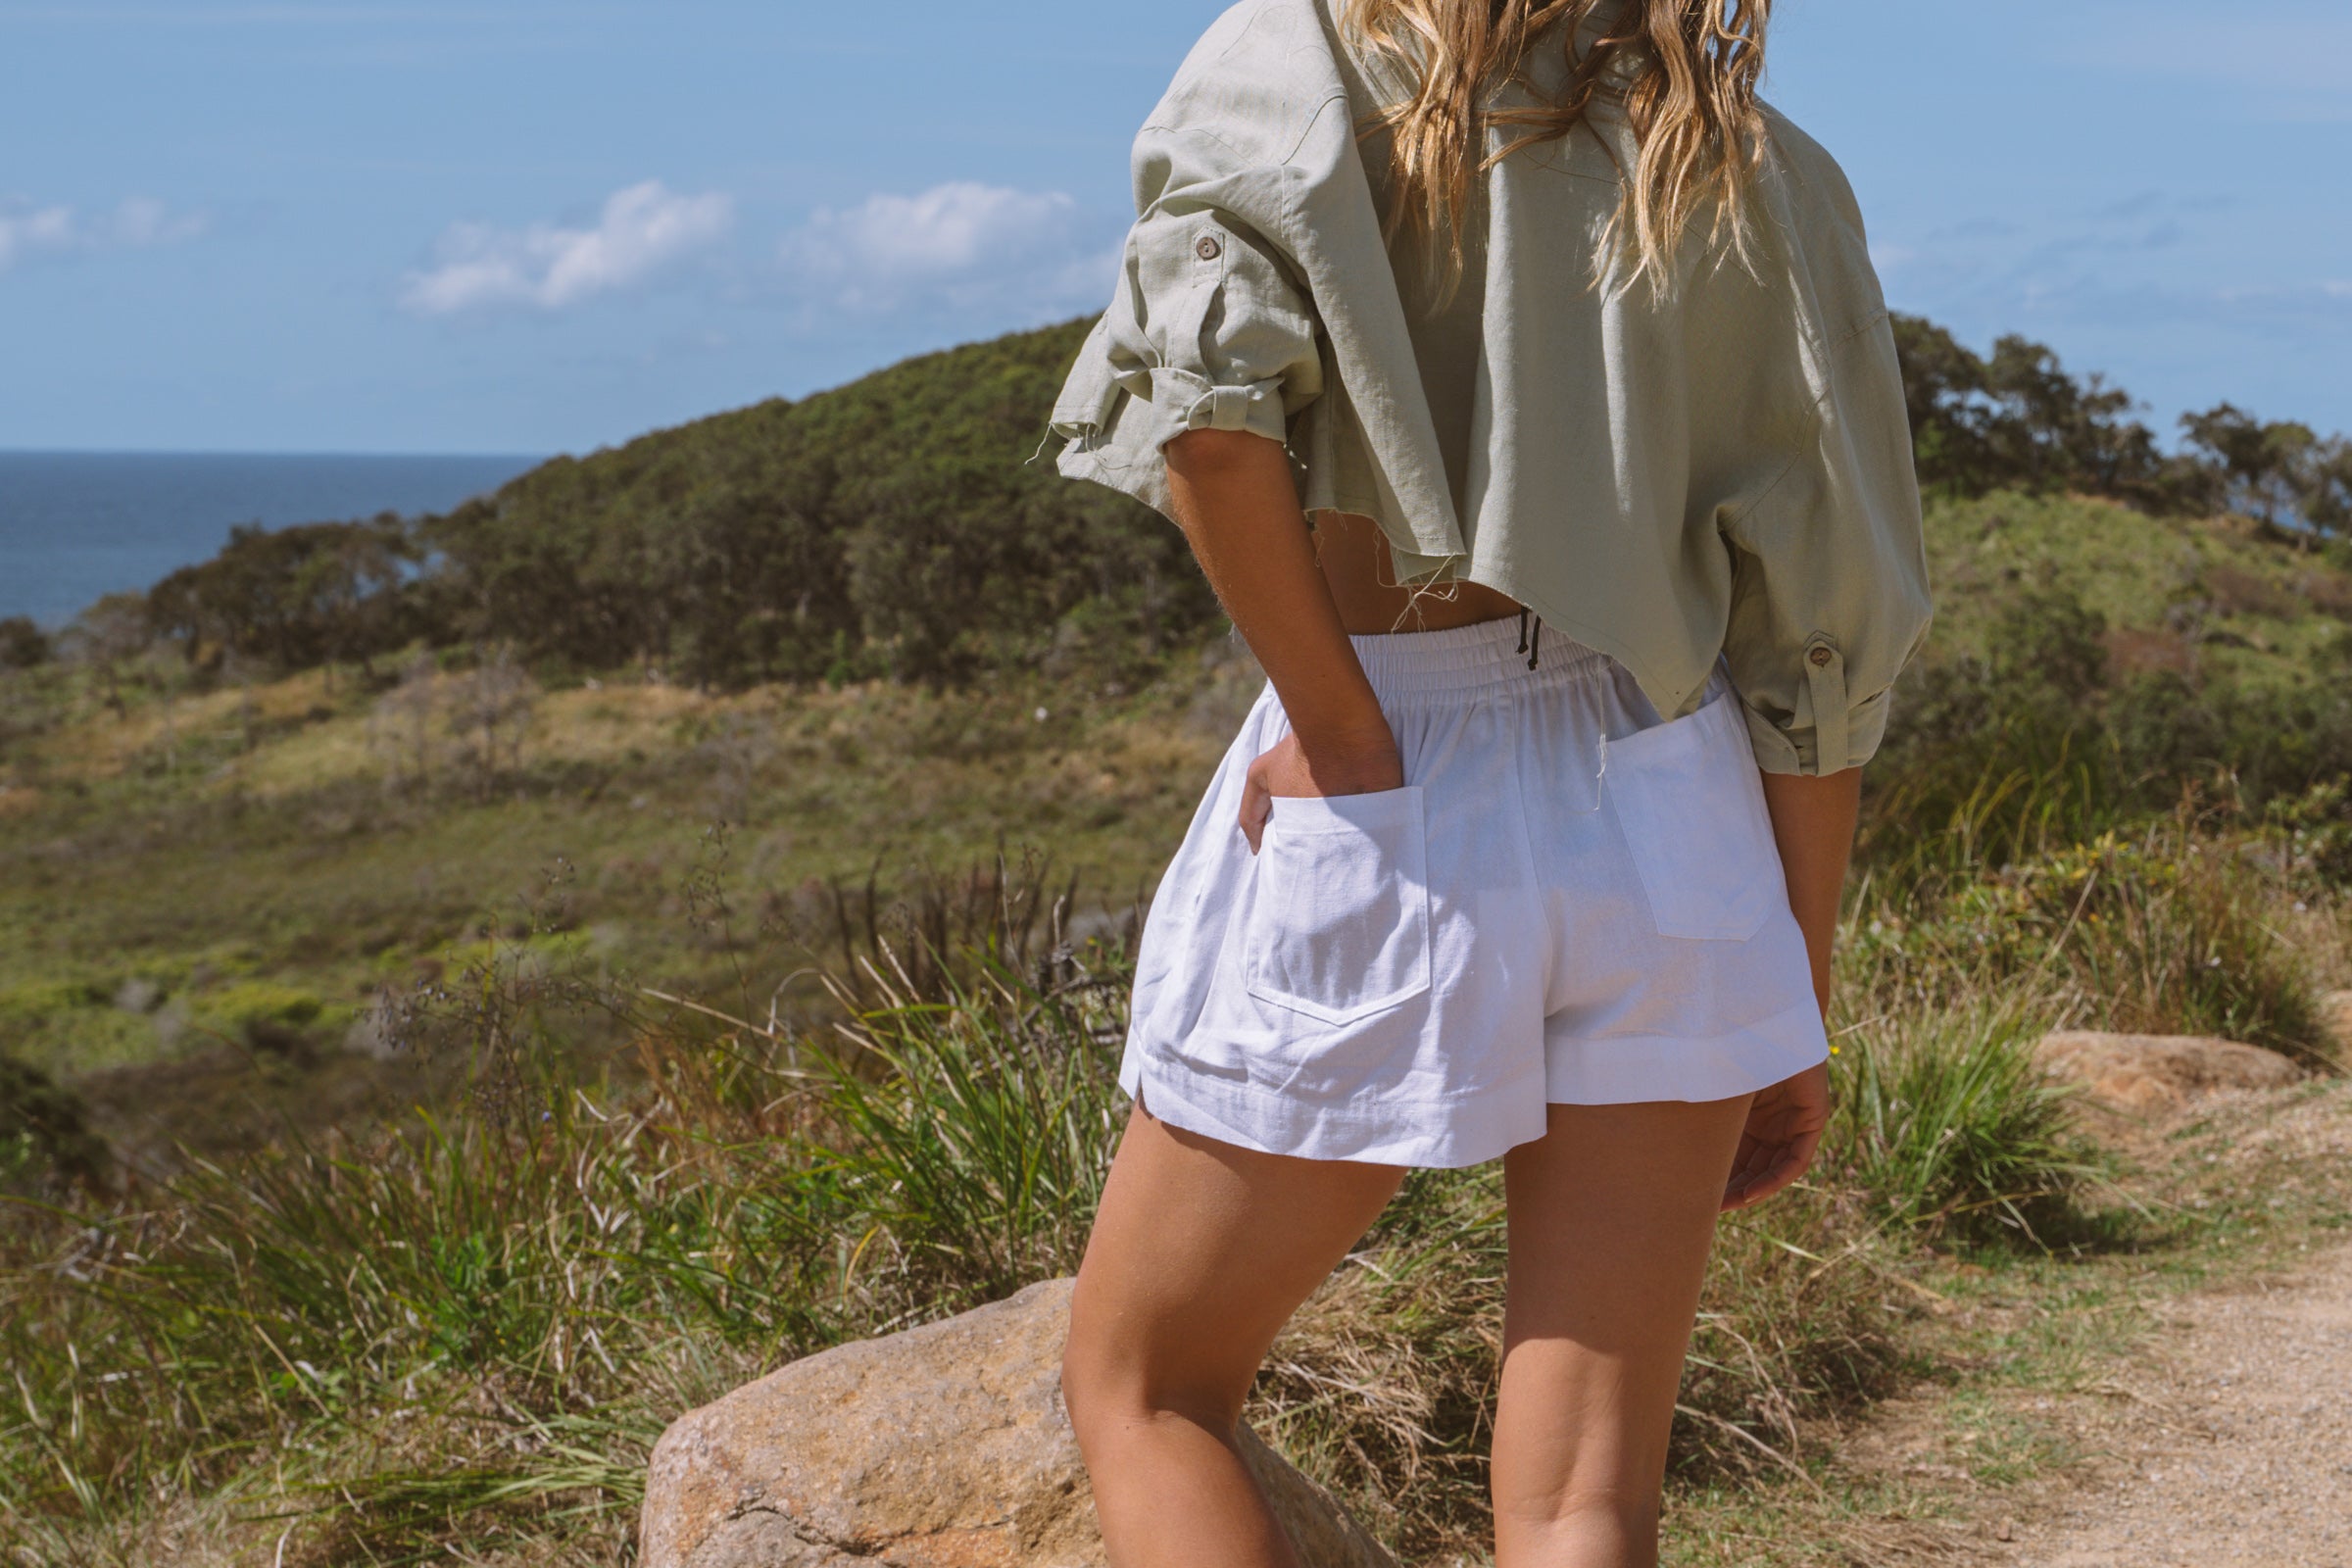 Solana Shorts - White